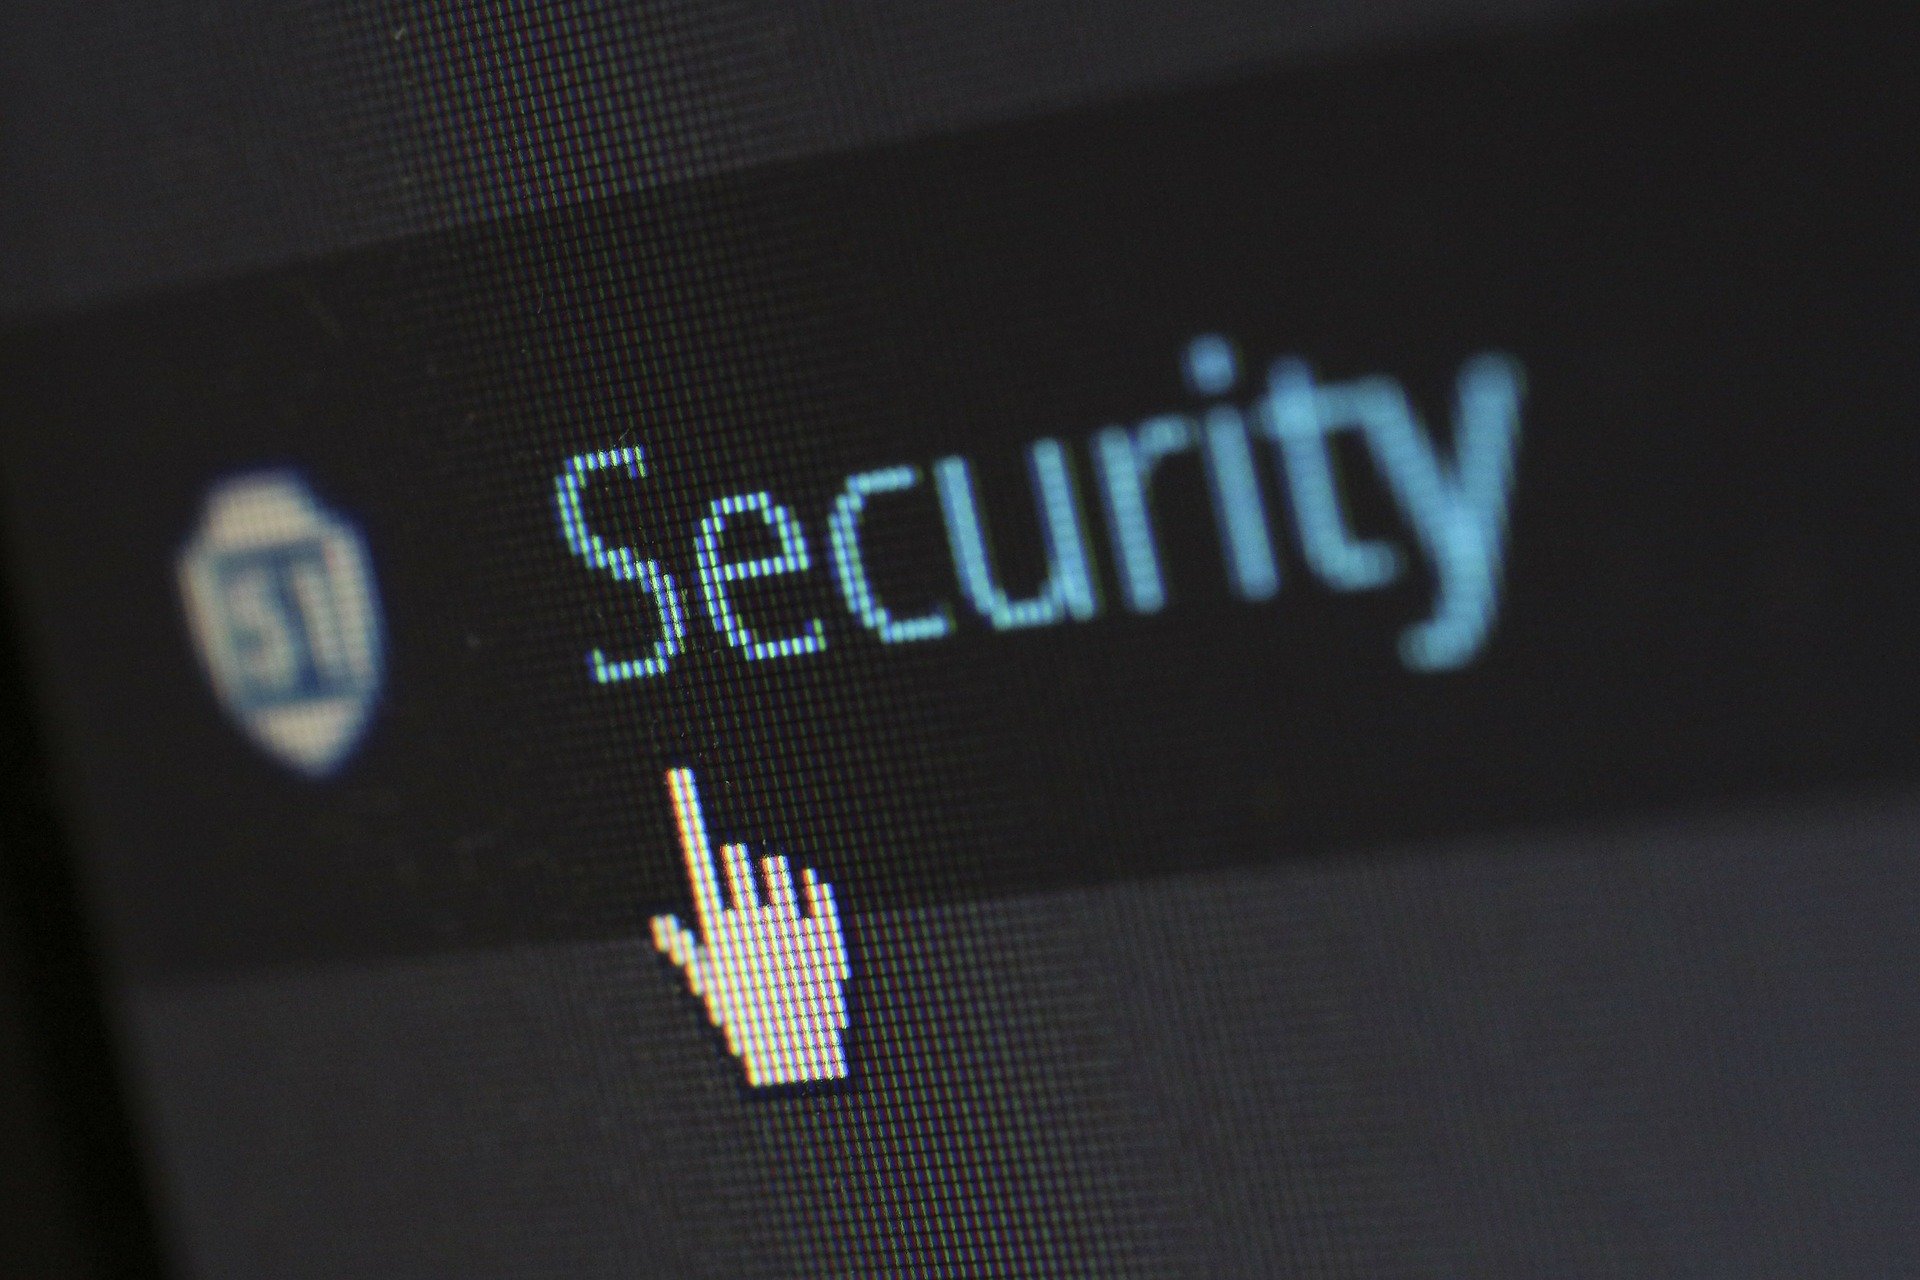 SecurLib/SSL (SSL estándar en sus aplicaciones)